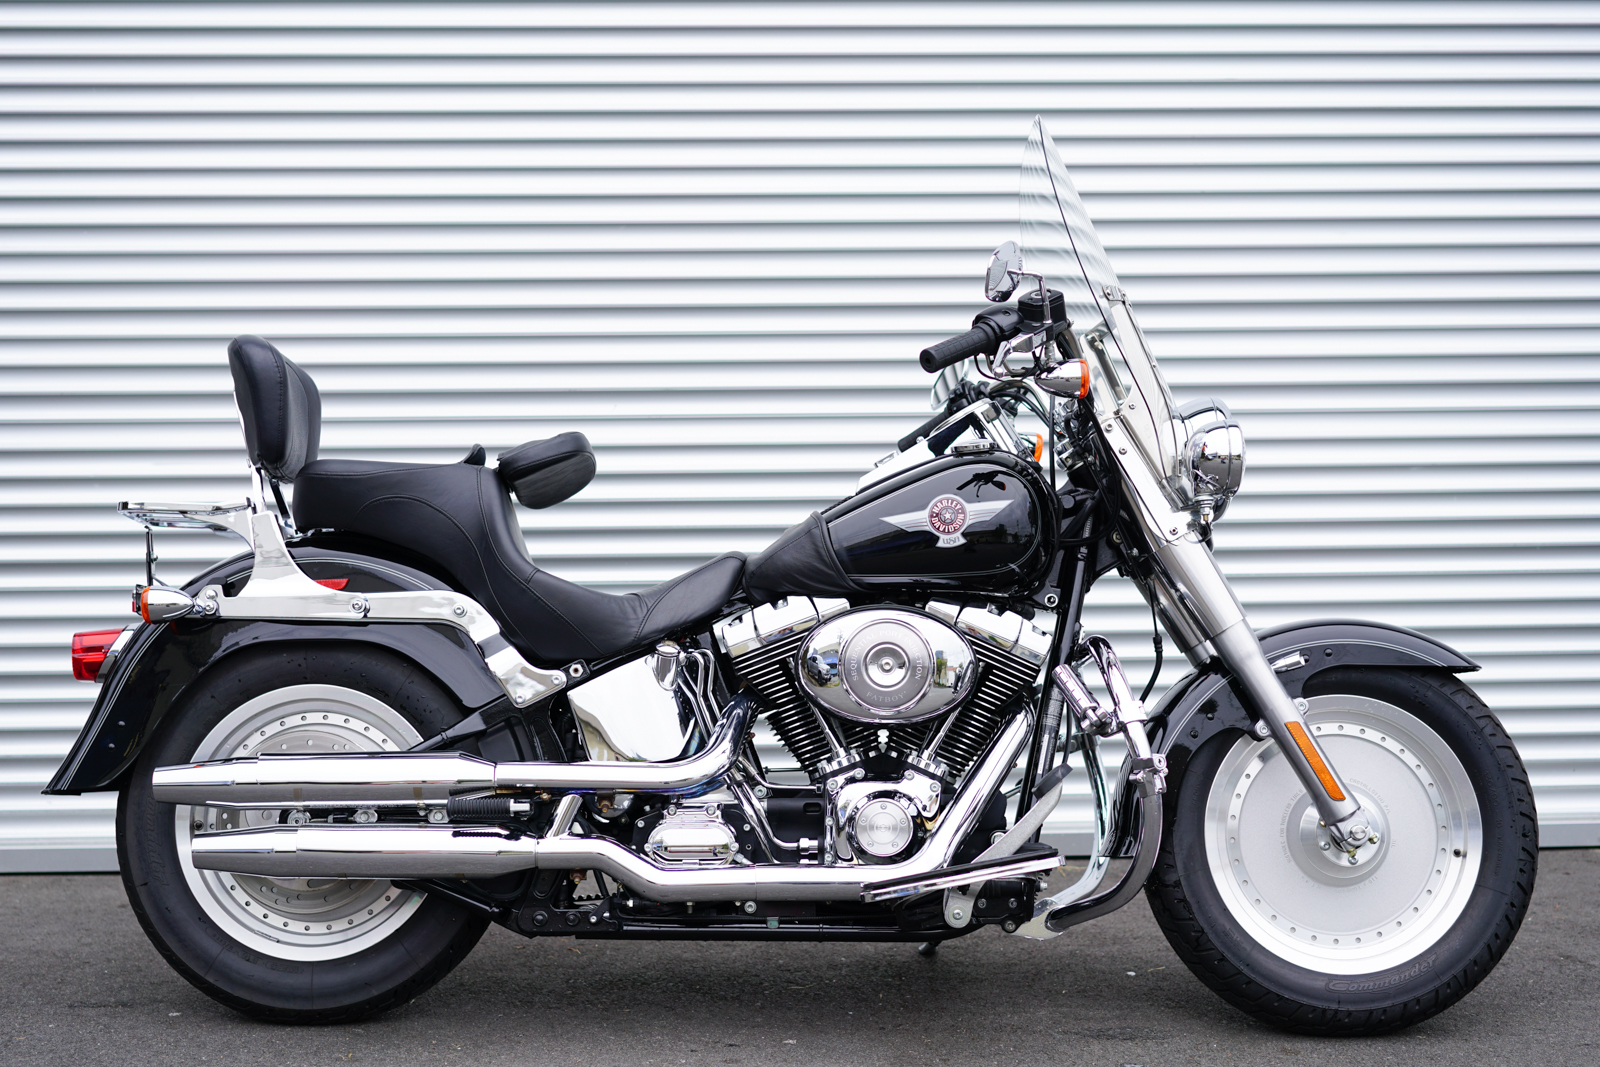 2006 Harley Davidson Fatboy For Sale Off 65 Medpharmres Com